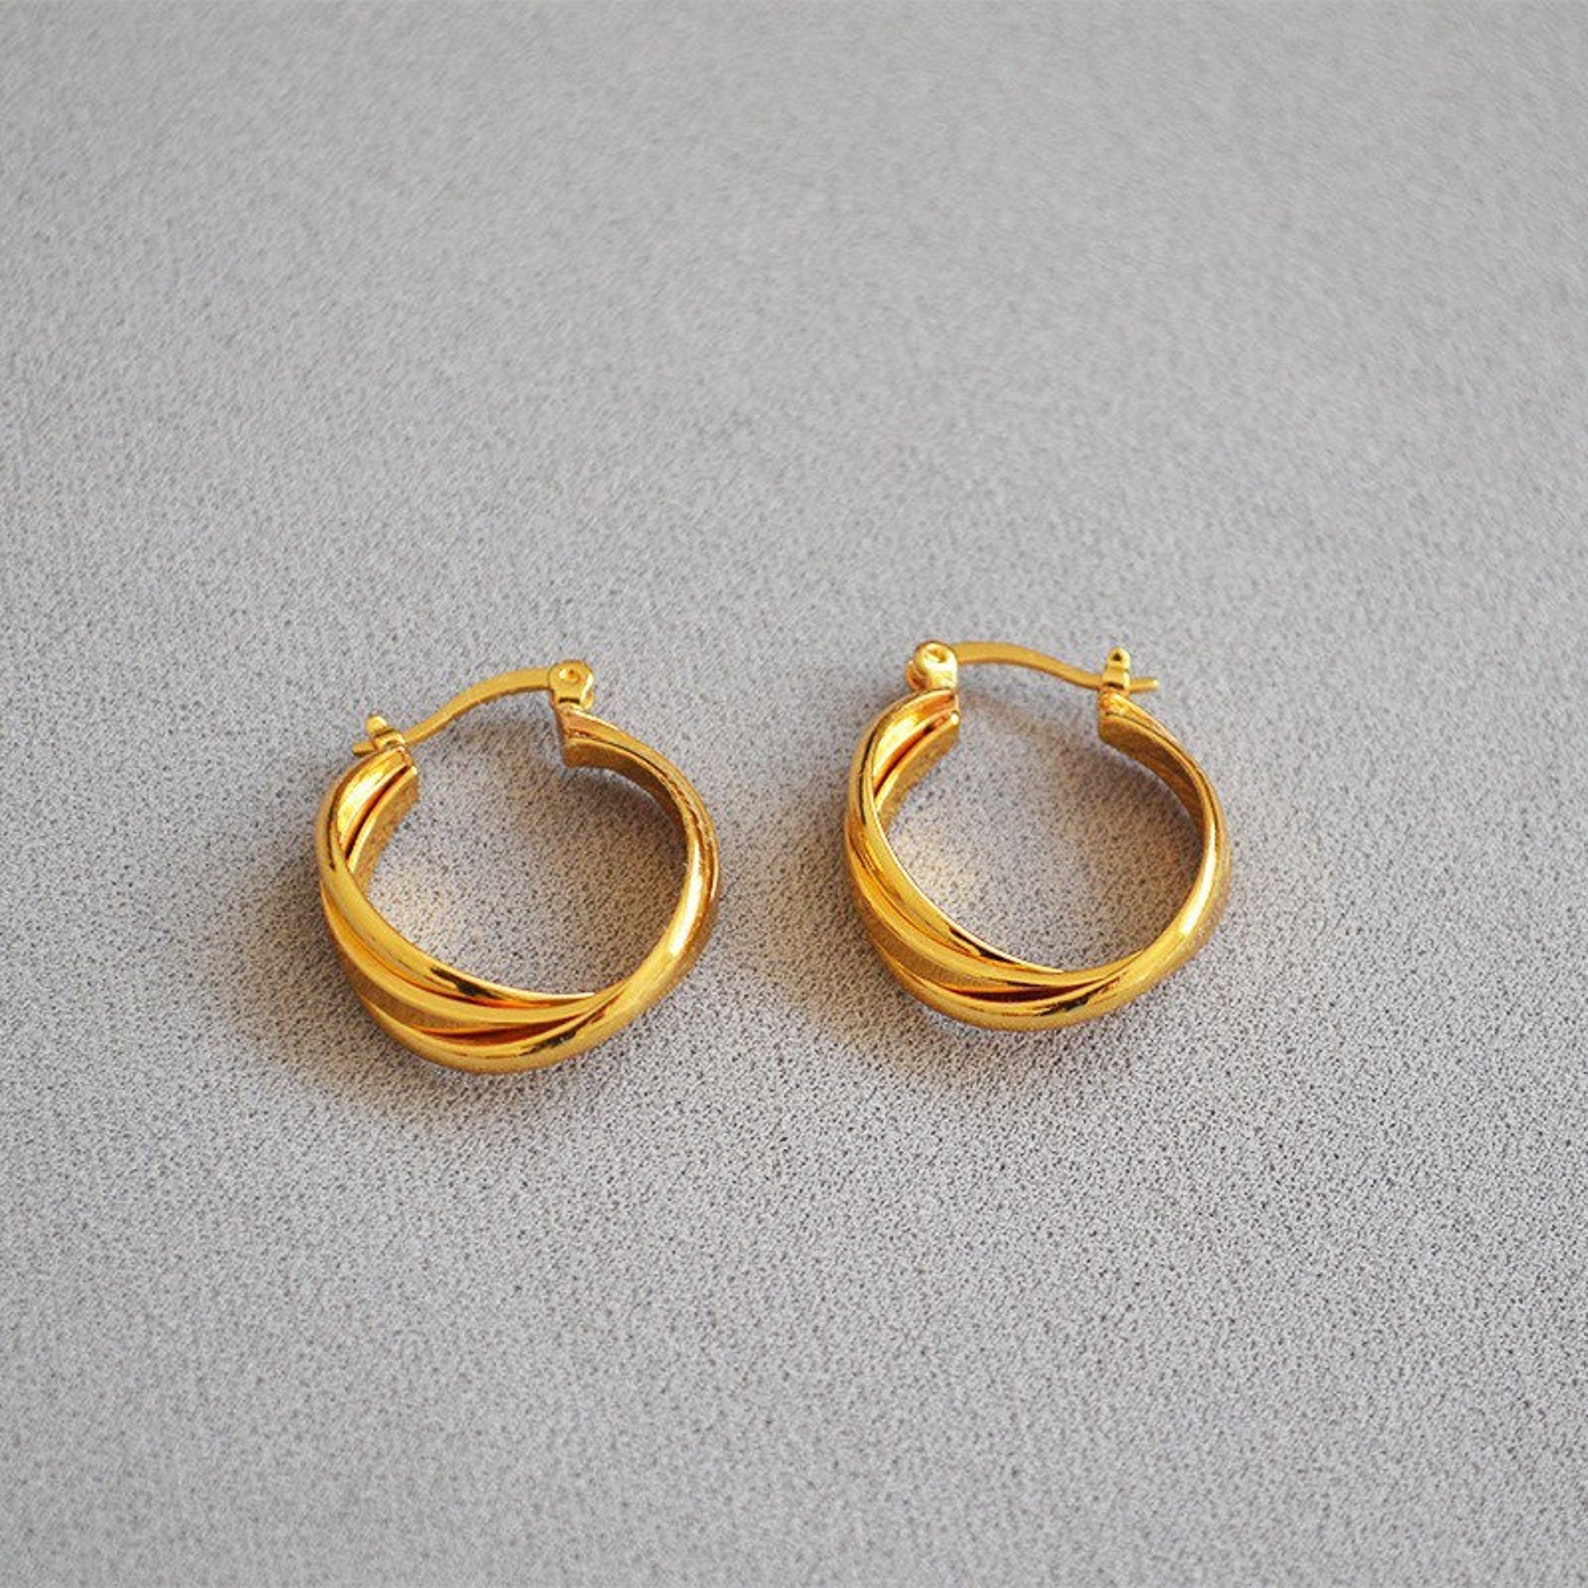 18K Gold Plated Twist Hoop Earrings A Pair 2cm Gold Hoop | Etsy